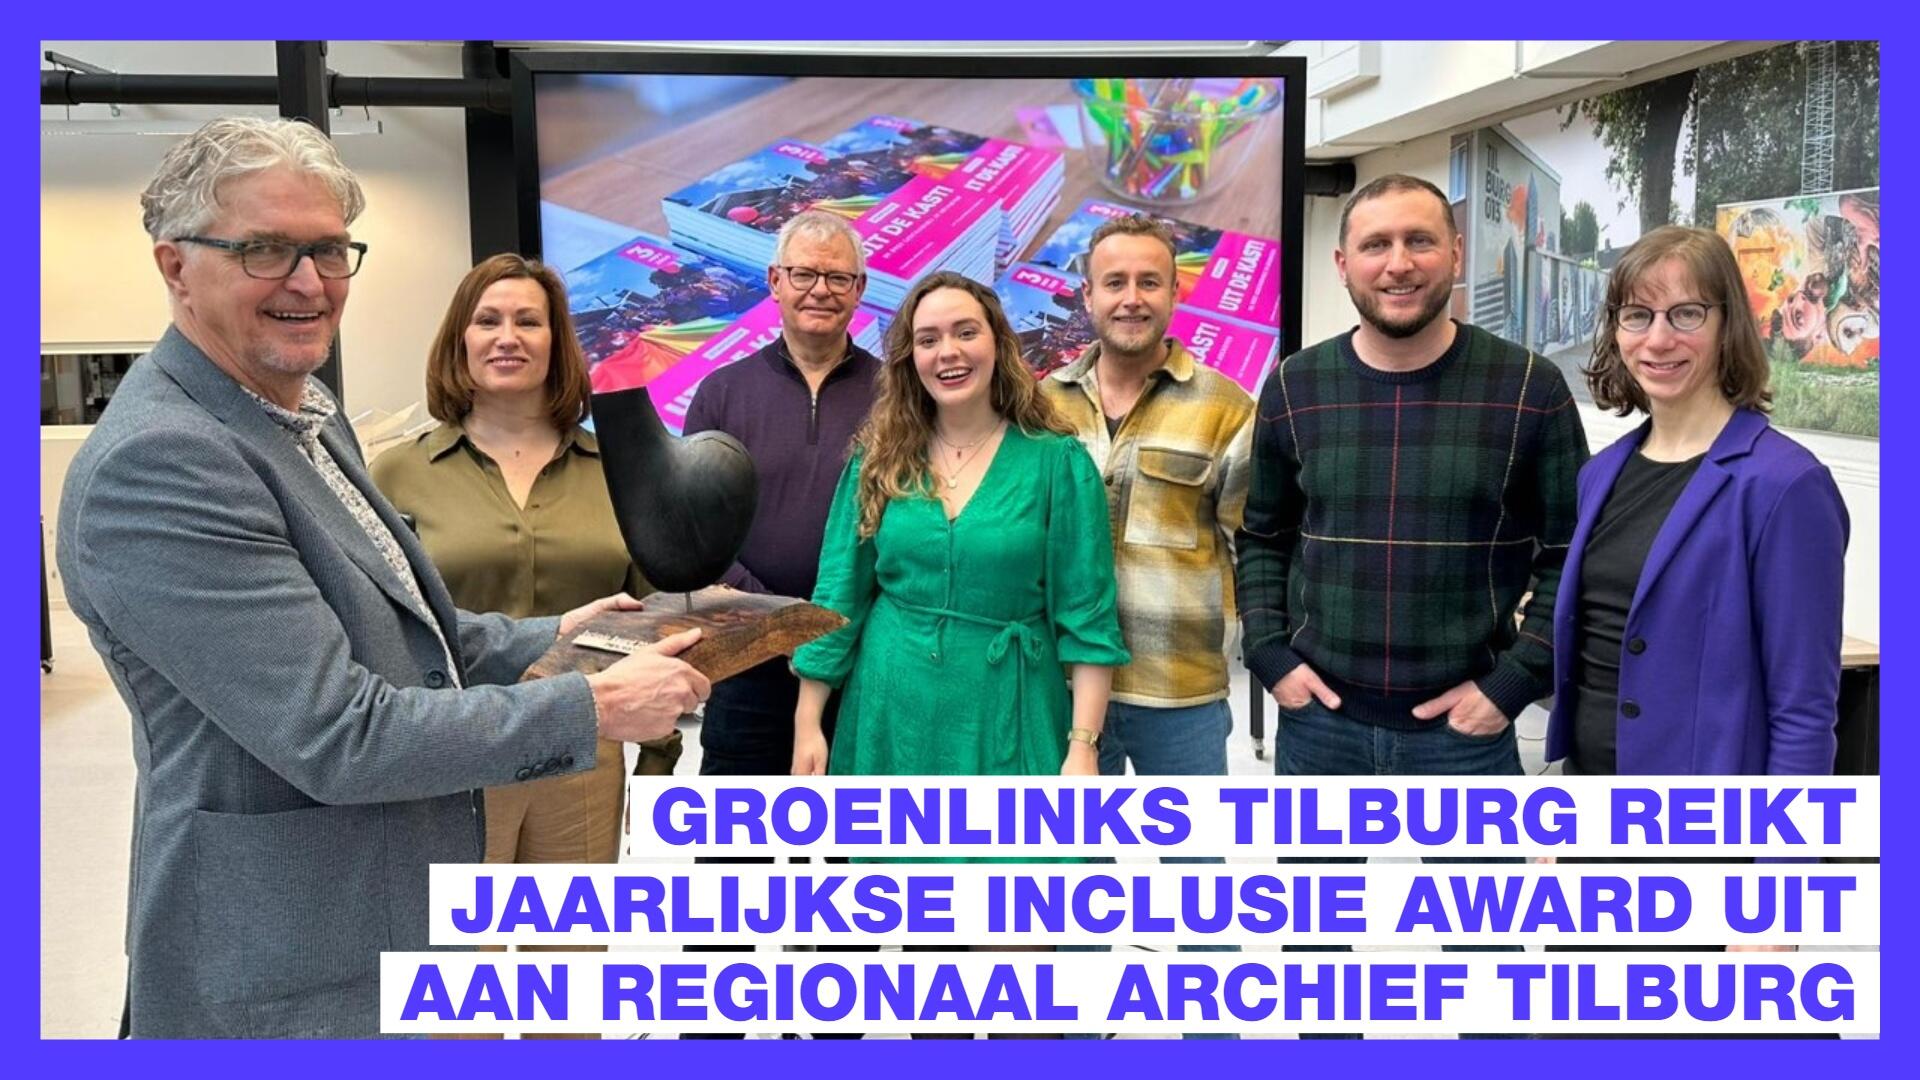 GroenLinks Tilburg reikt jaarlijkse inclusie award uit aan Regionaal Archief Tilburg